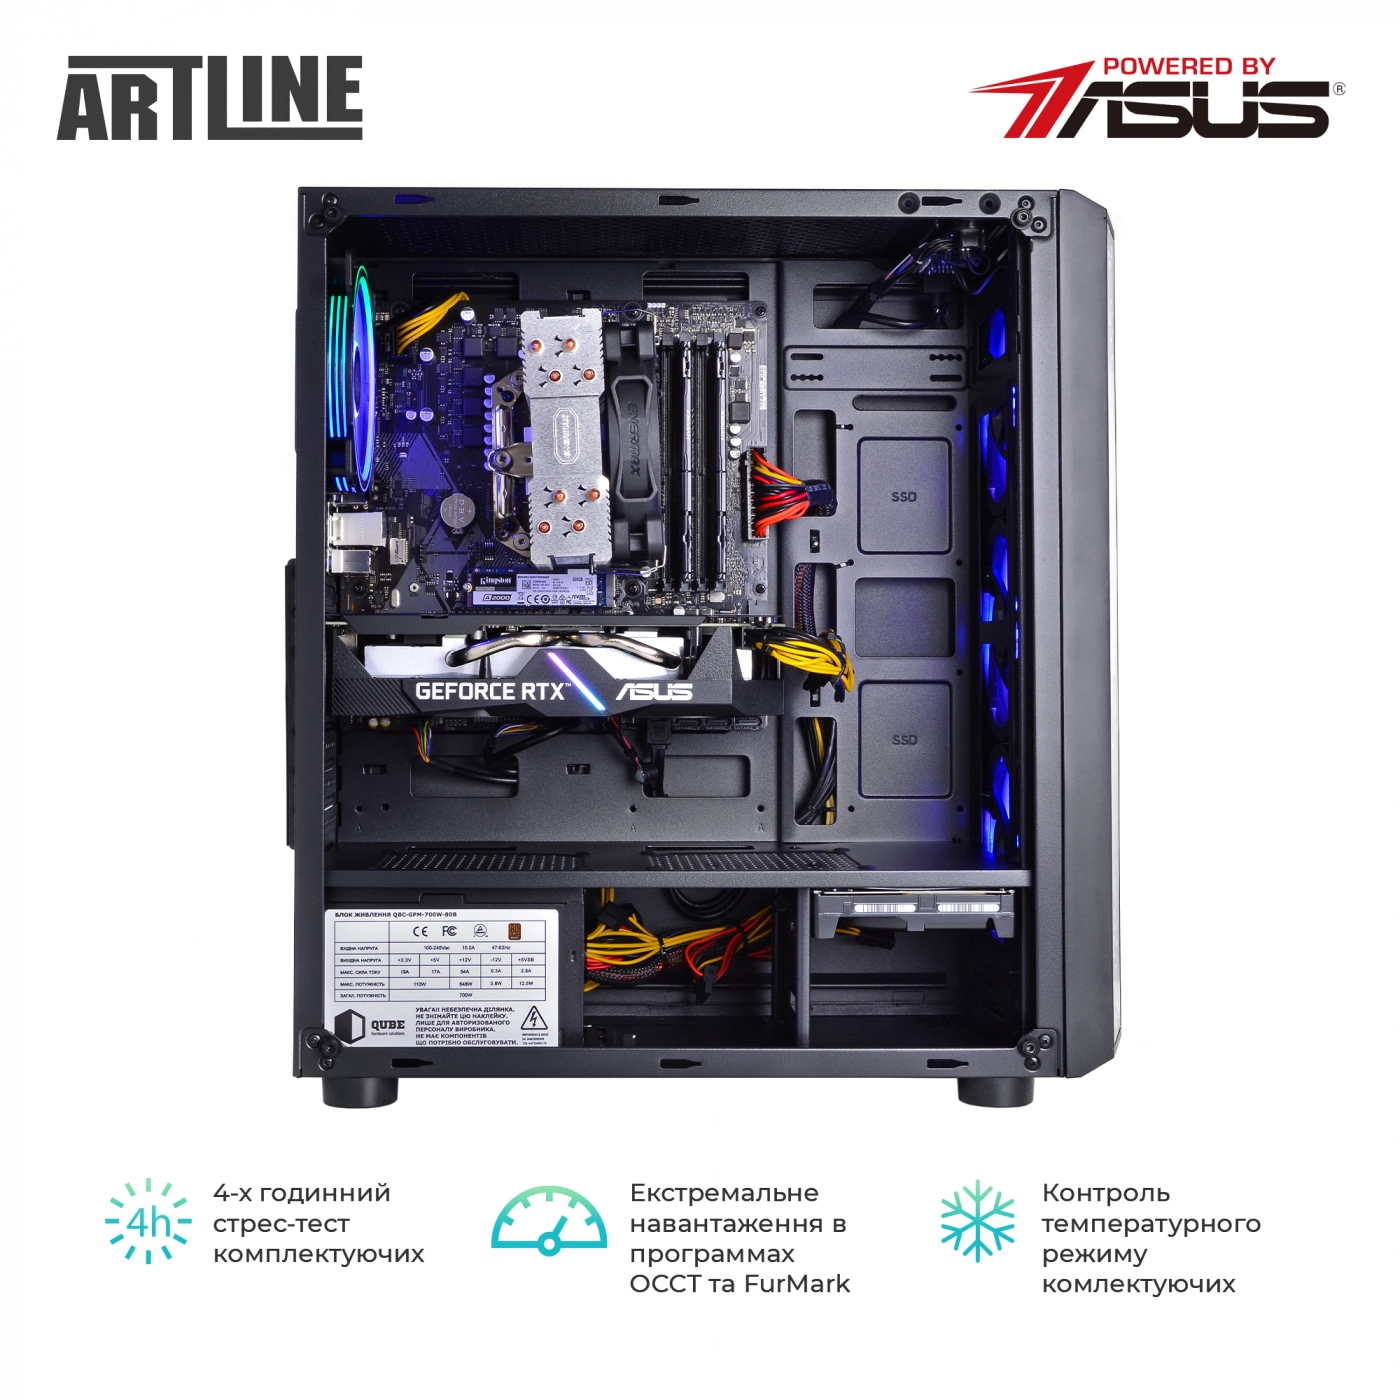 Купить Компьютер ARTLINE Gaming X55v32 - фото 8